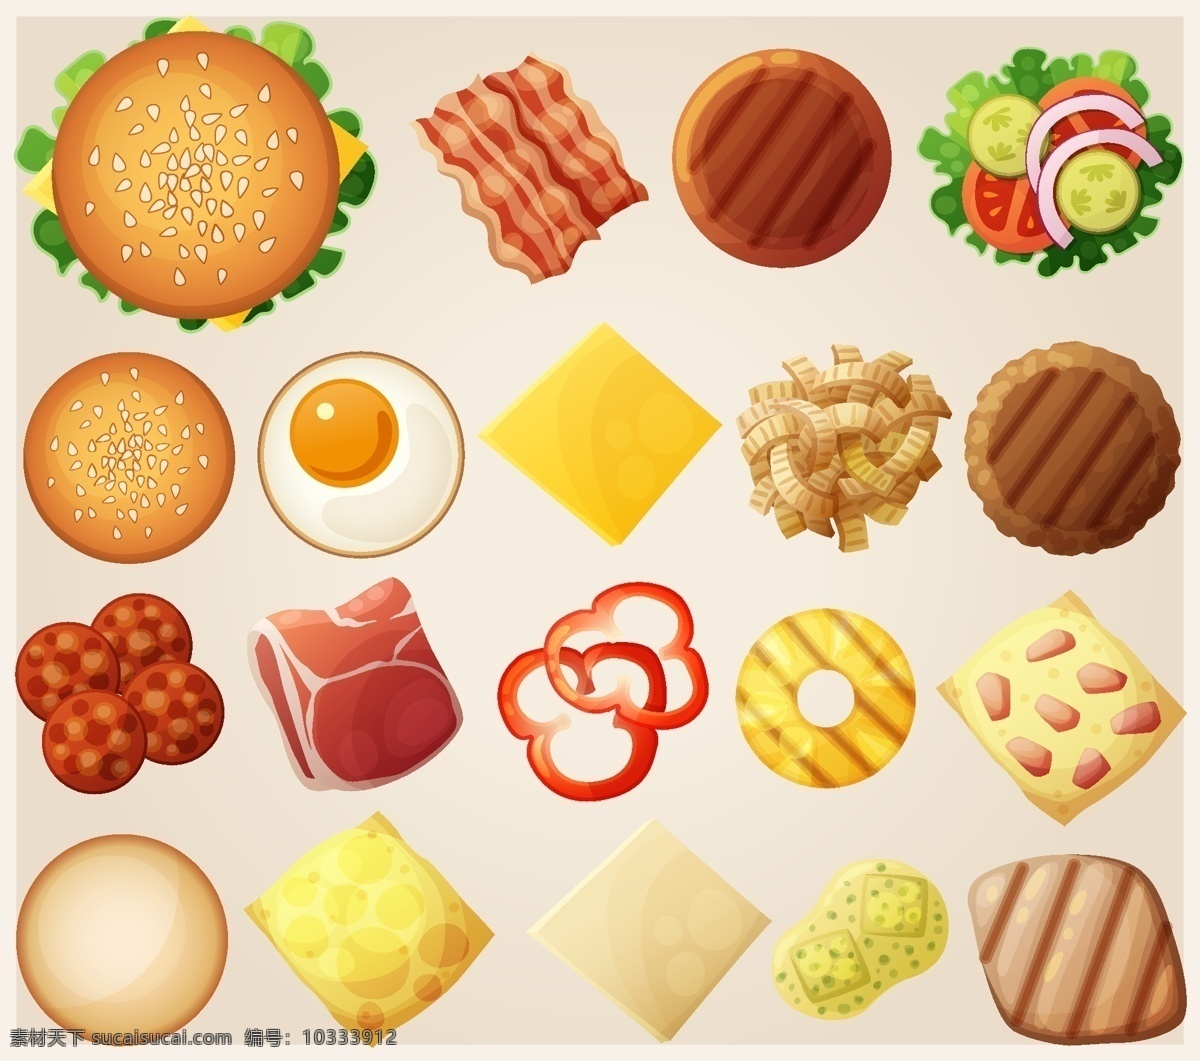 卡通 美食 汉堡 食物 图标 矢量 火腿 辣椒 设计素材 平面素材 甜甜圈 牛肉 鸡蛋 生菜卡通